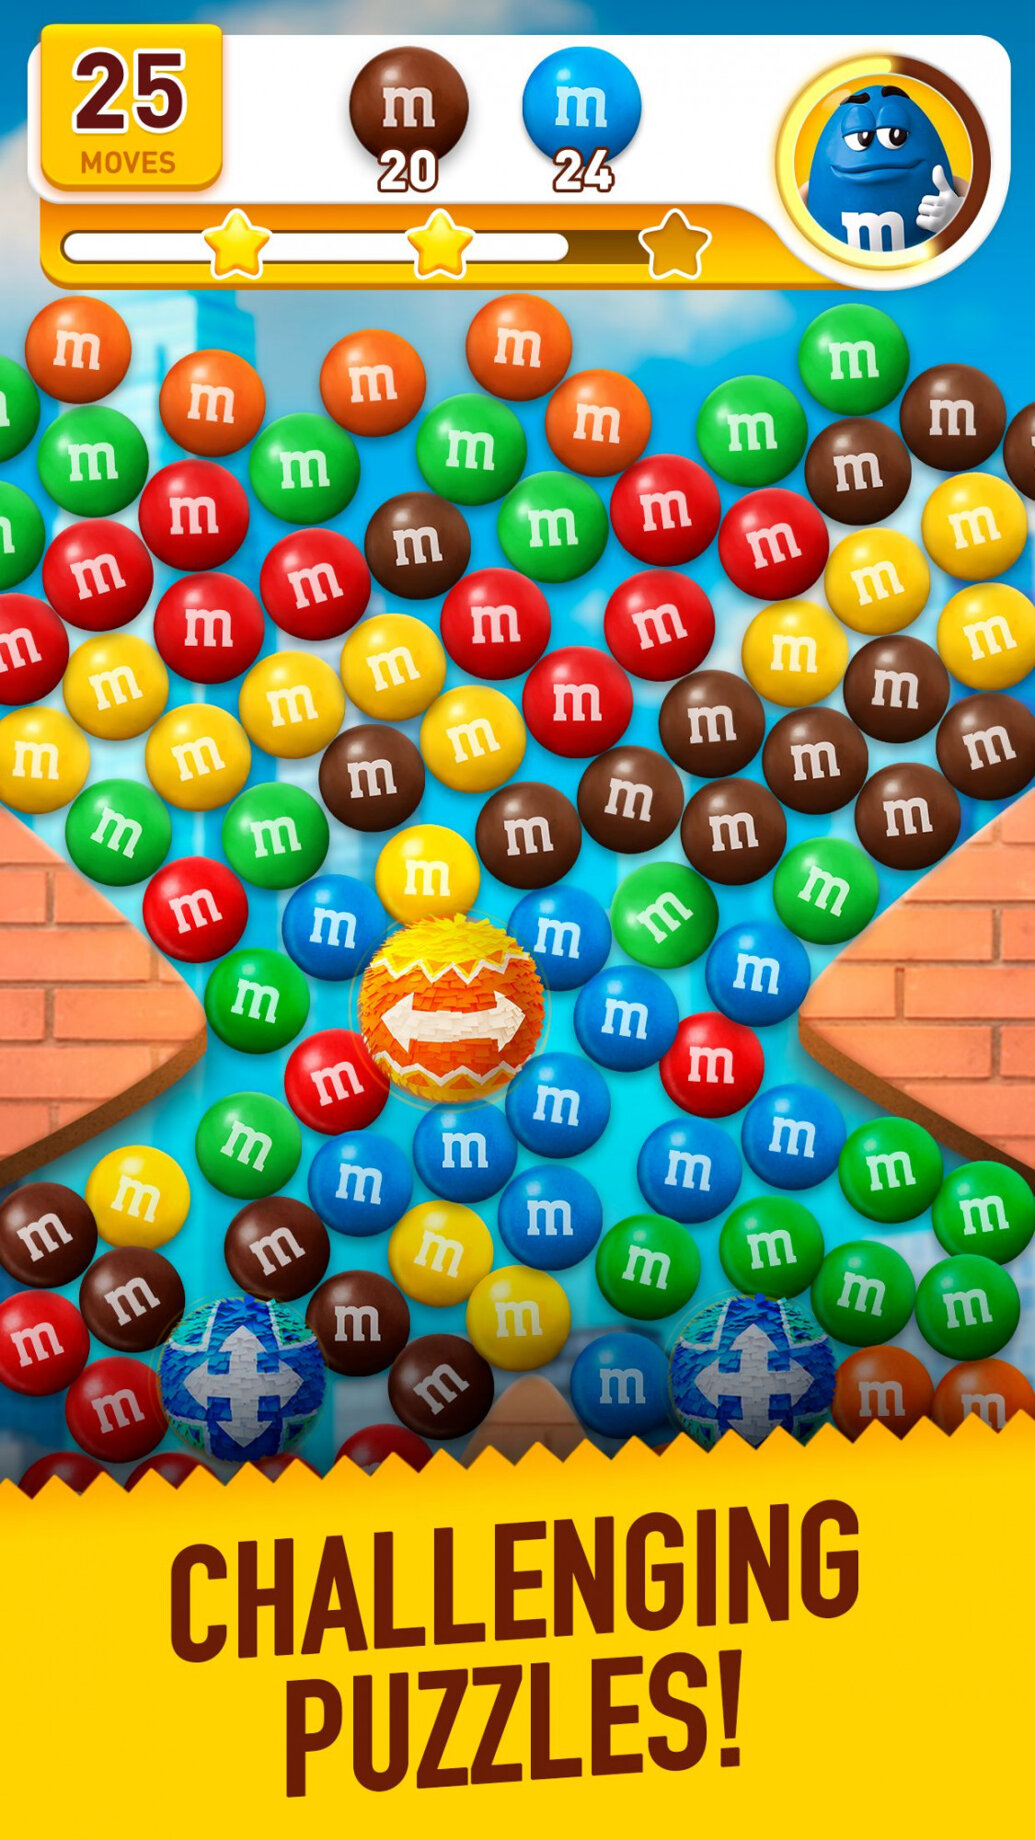 Barevné bonbony M&M’s hlavní hvězdou nové logické a nenáročné hry